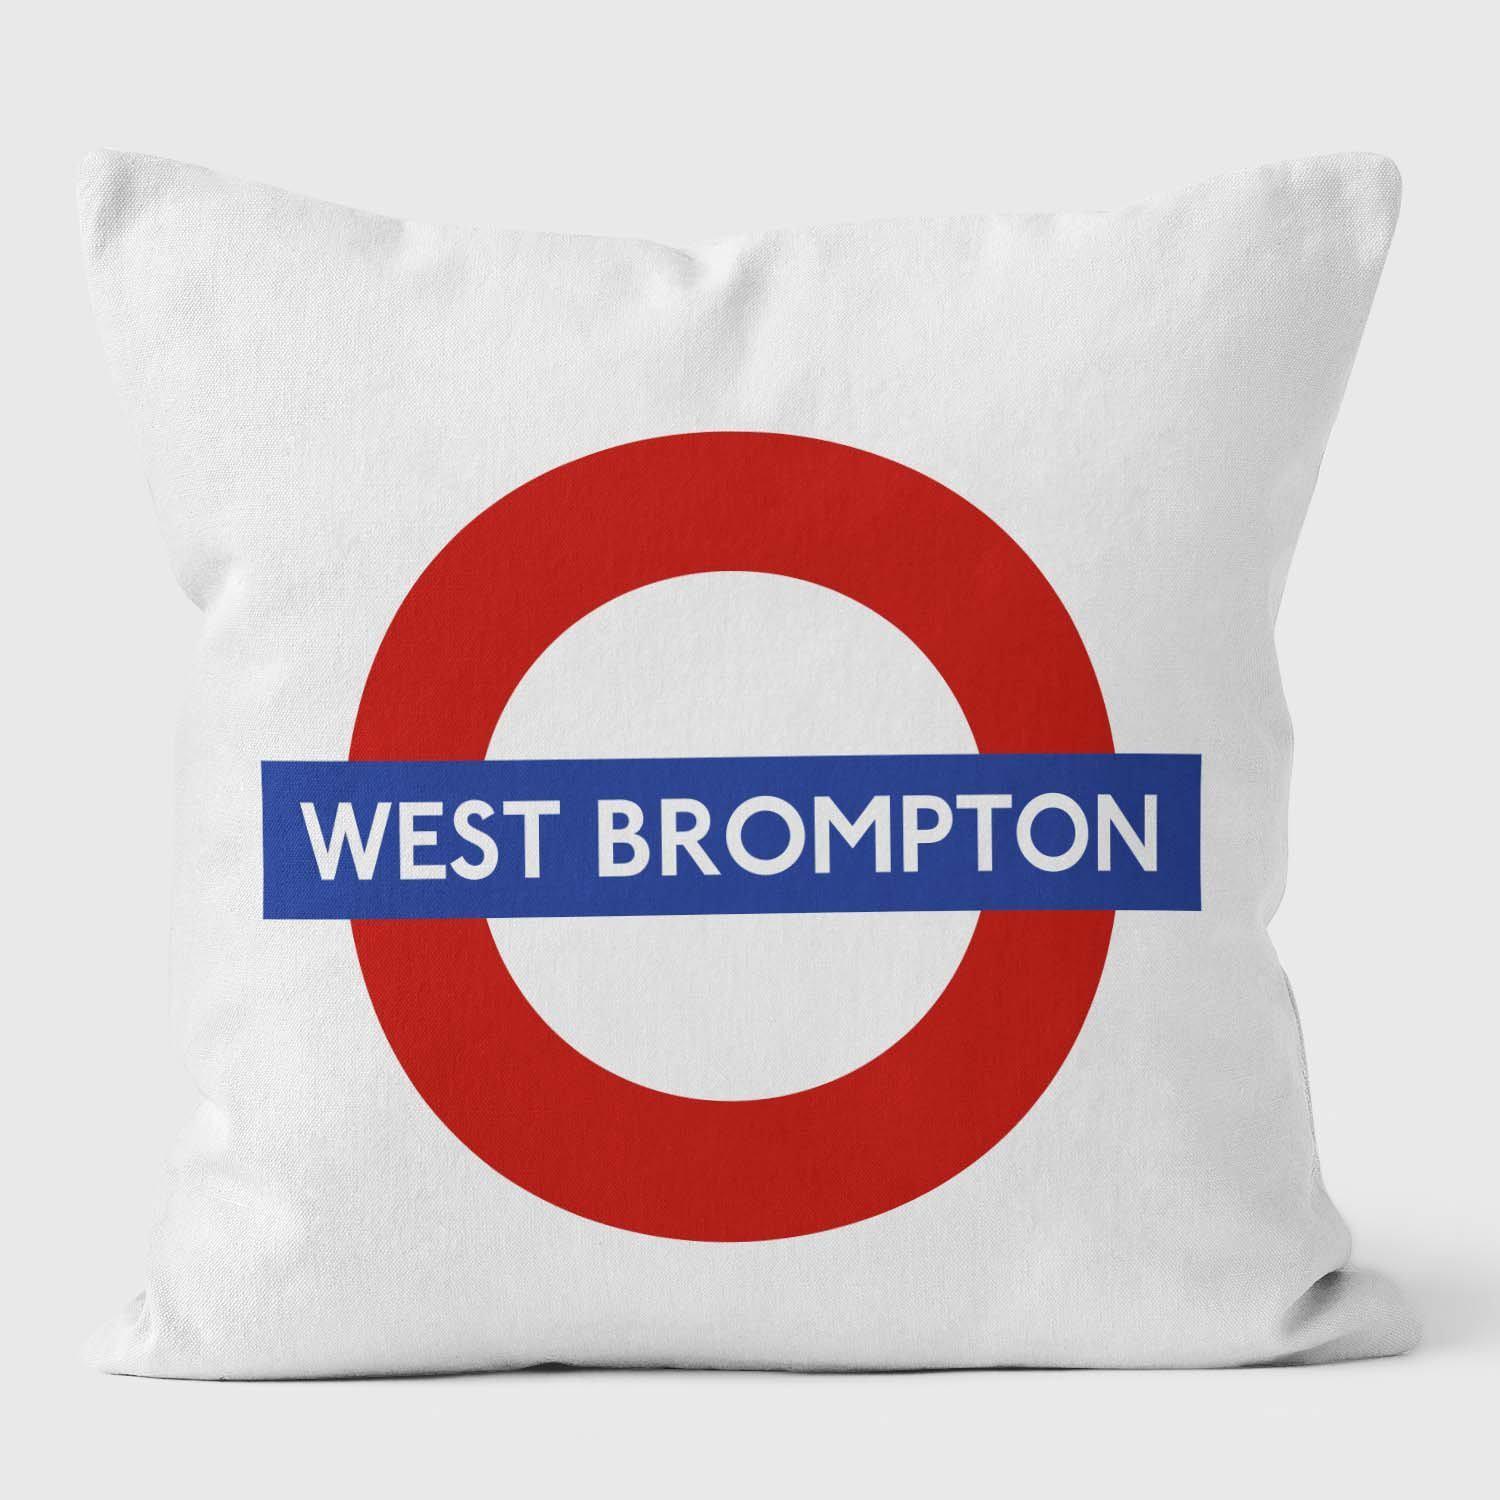 West Brompton London Underground Tube Station Roundel Cushion - Handmade Cushions UK - WeLoveCushions